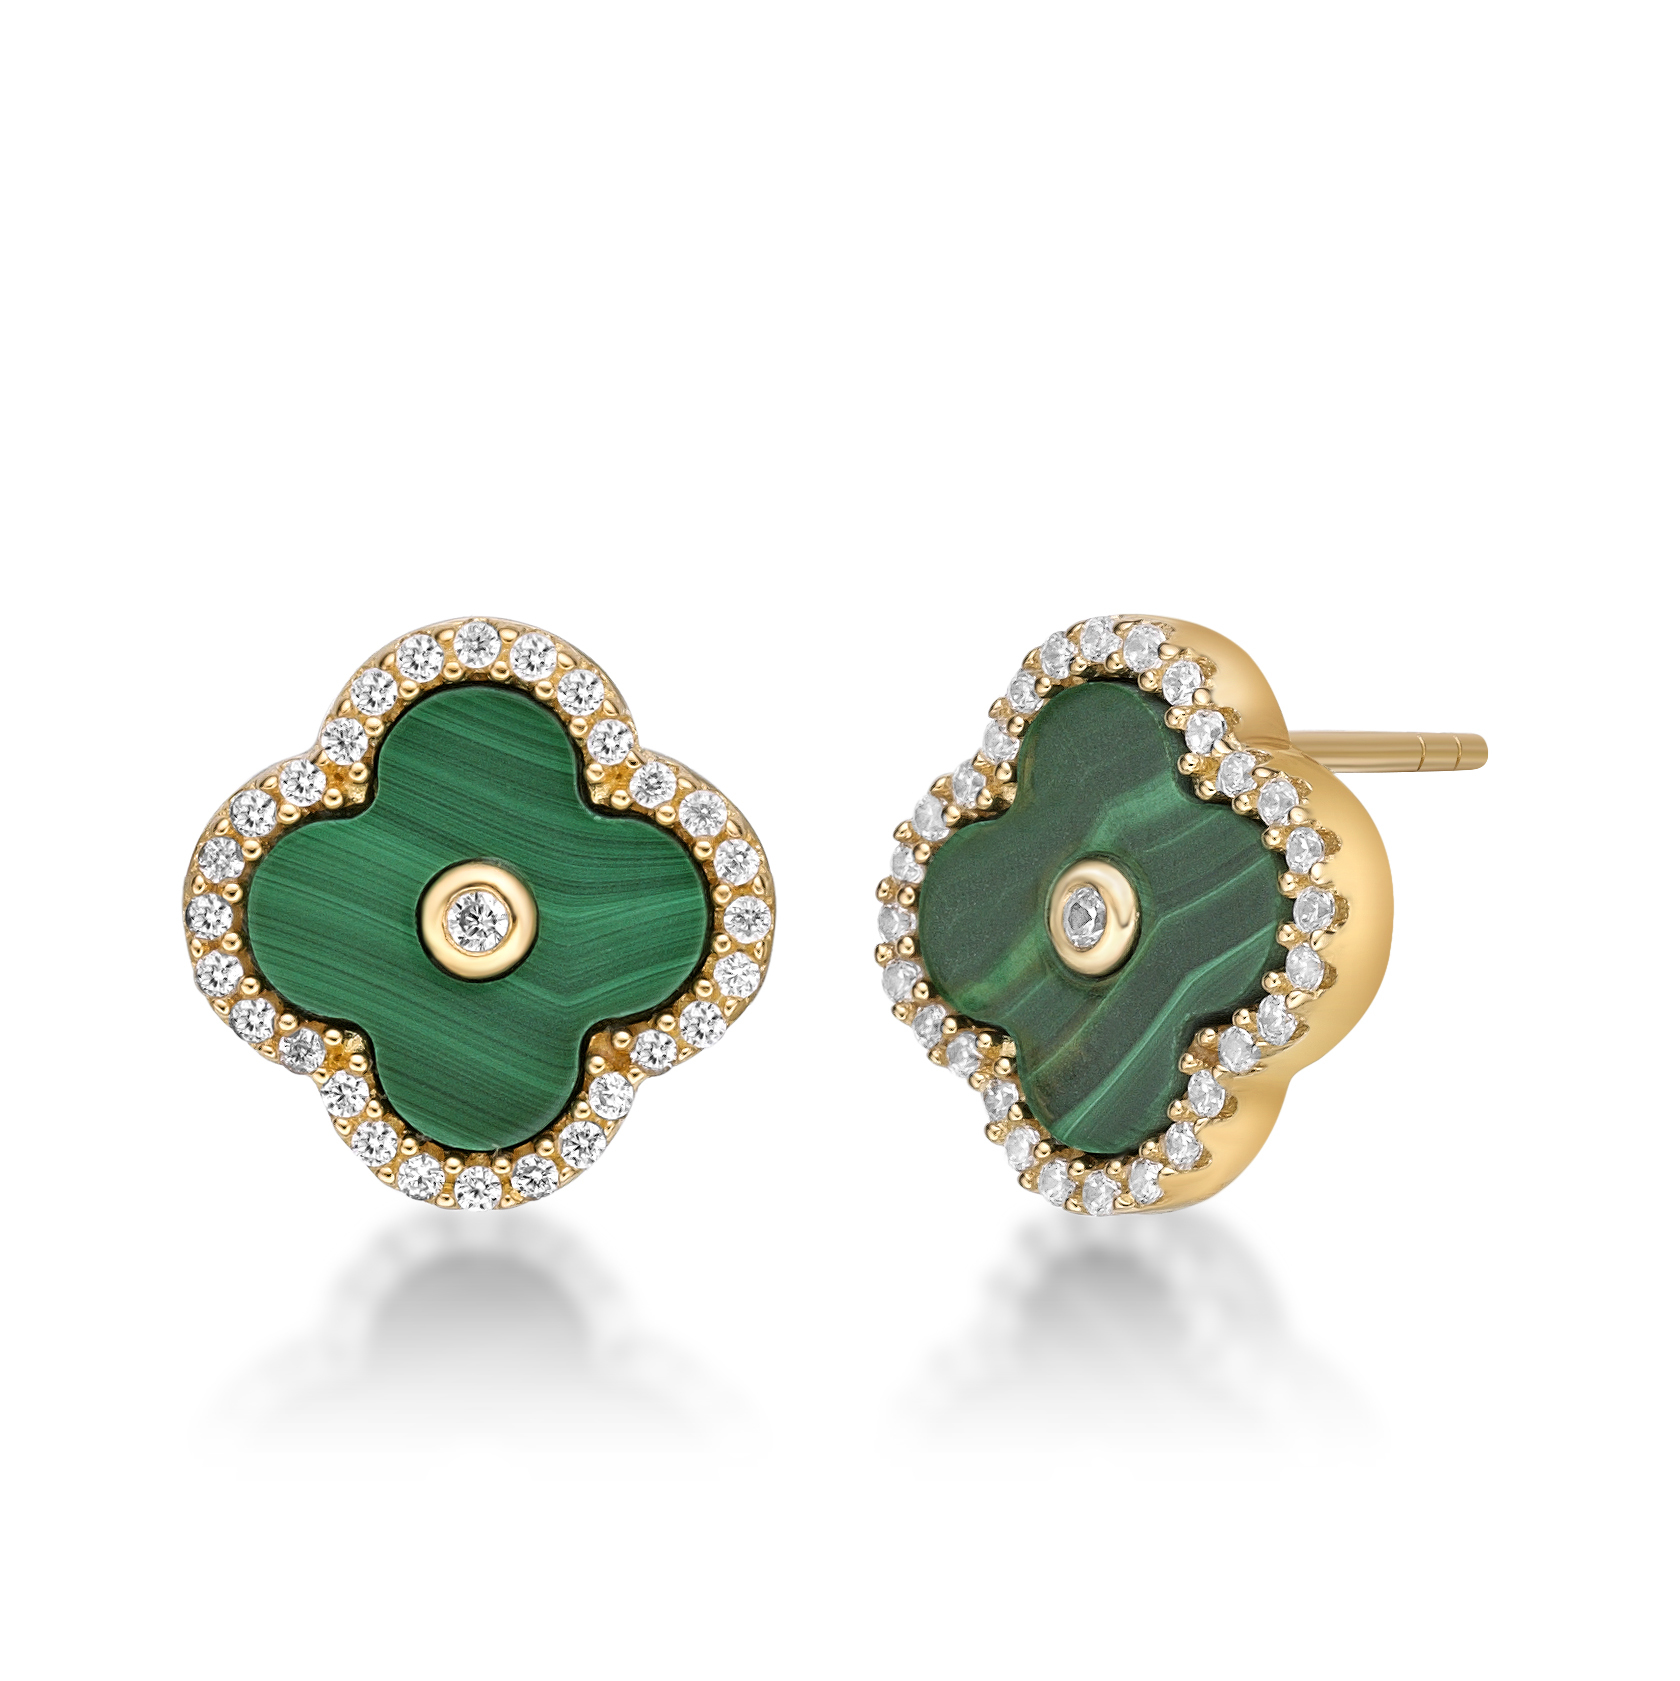 51077-earrings-fashion-jewelry-sterling-silver-51077-1-1.jpg